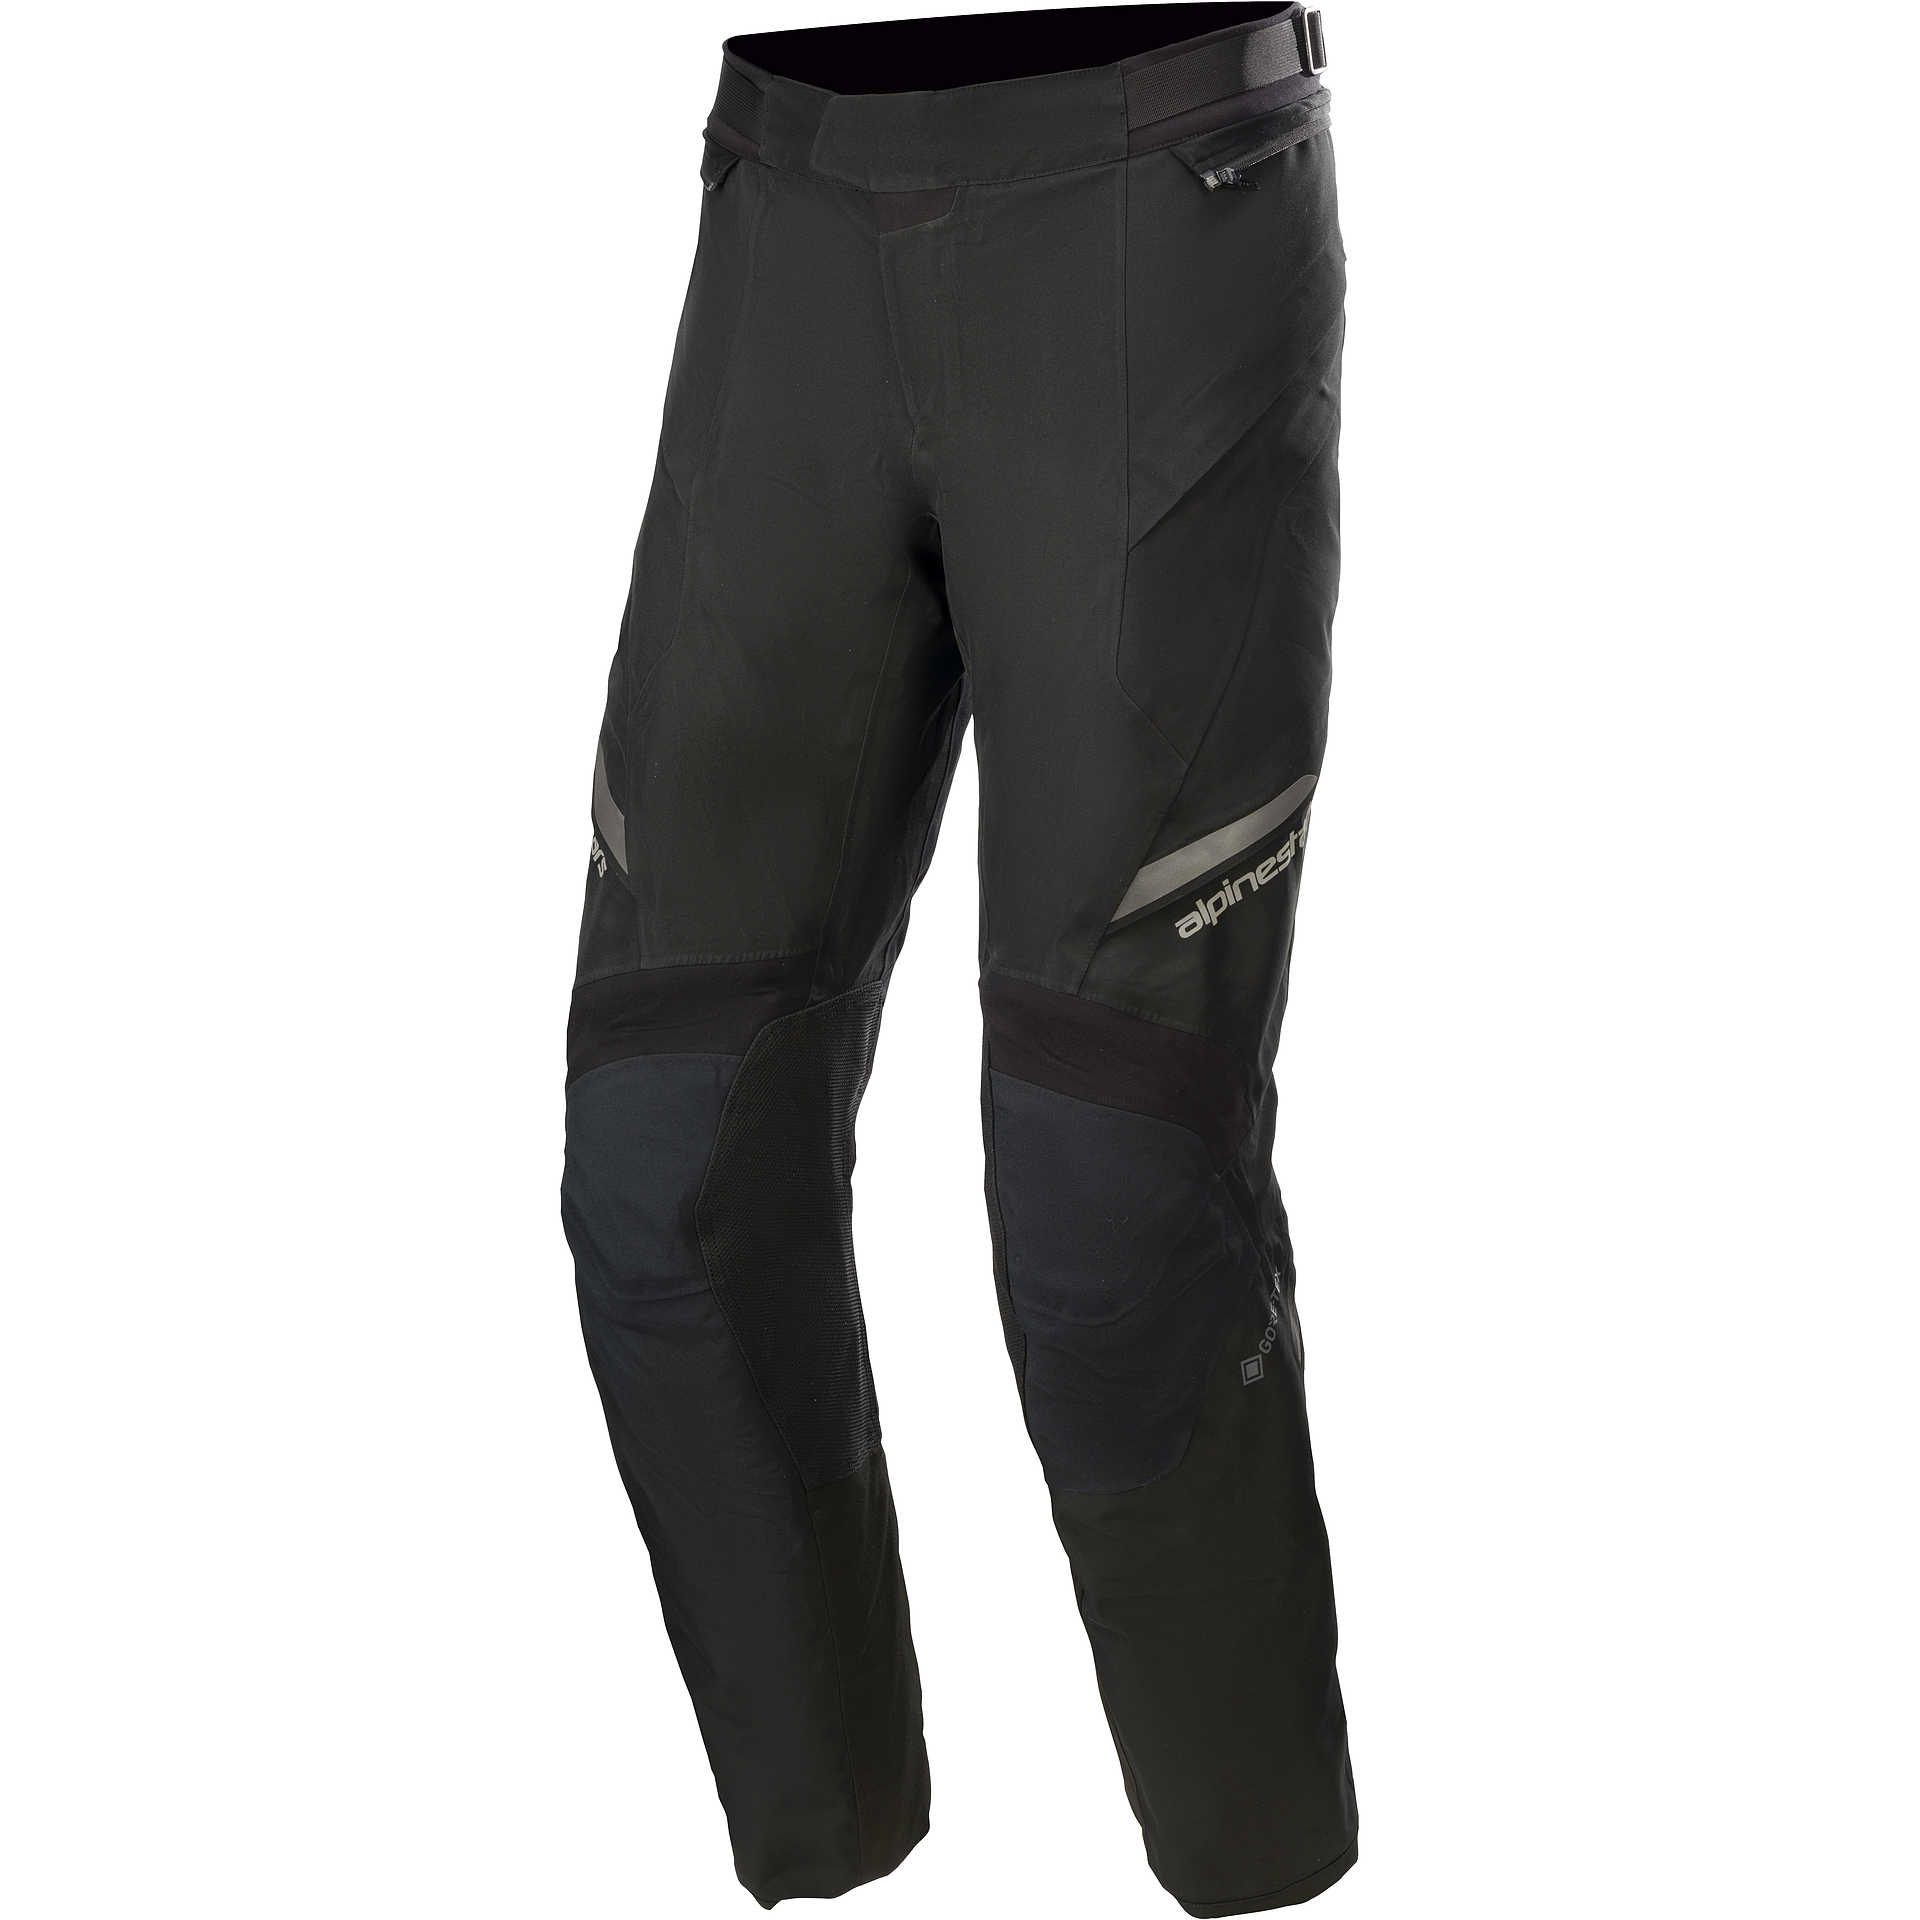 Pantalon de moto en tissu technique A-pro modèle Hydro Fluo Vente en Ligne  